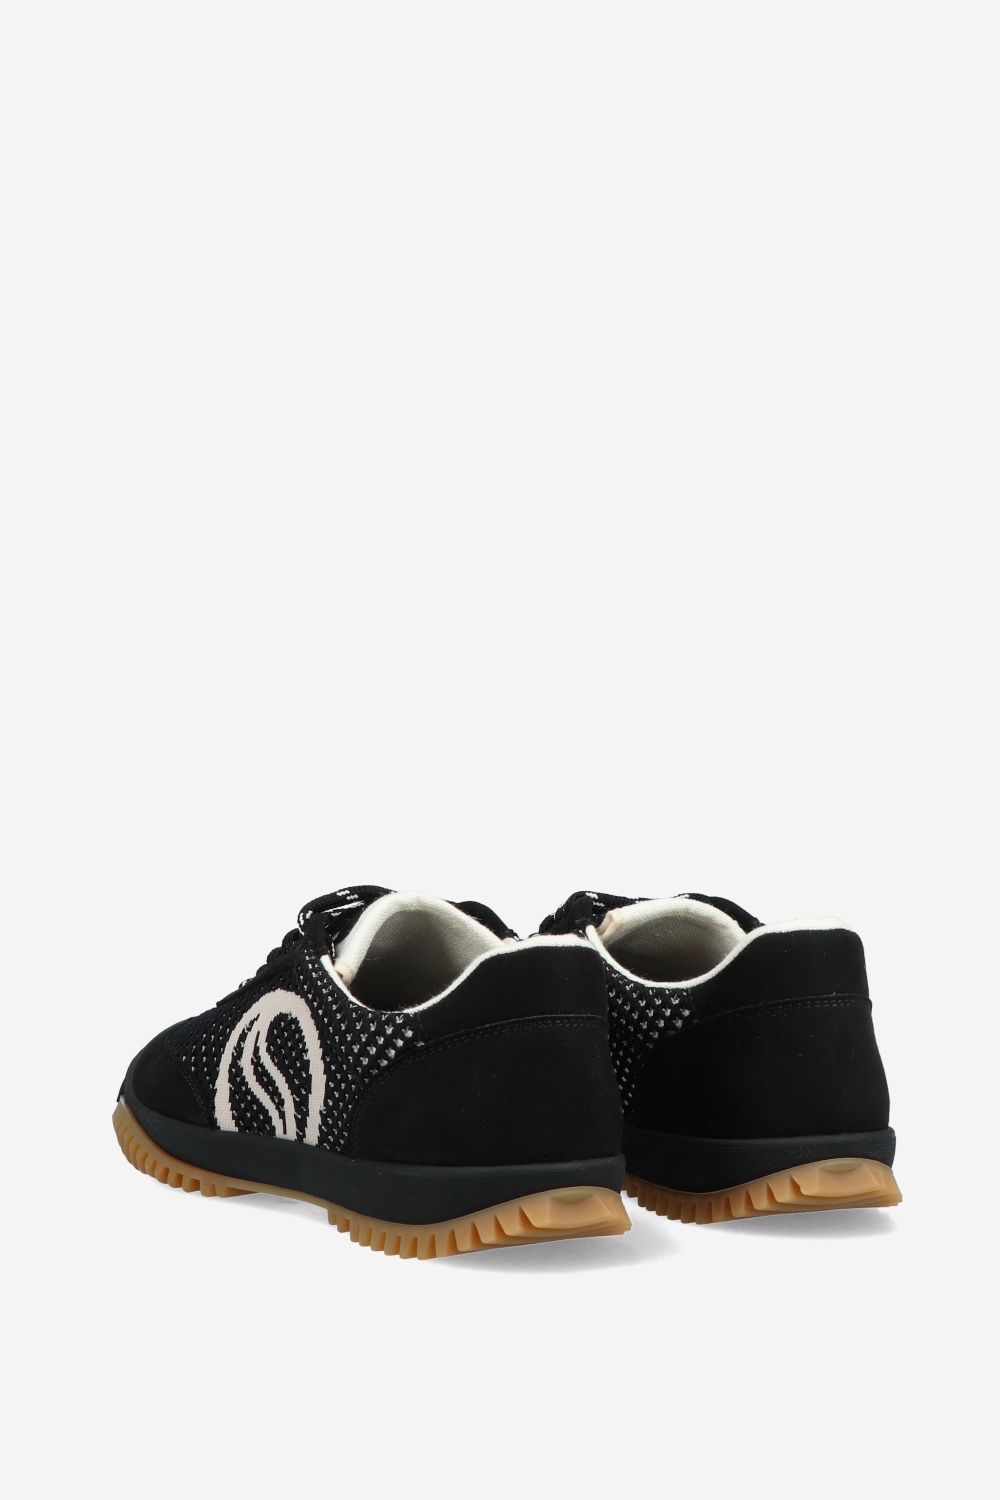 Stella McCartney Sneakers Black